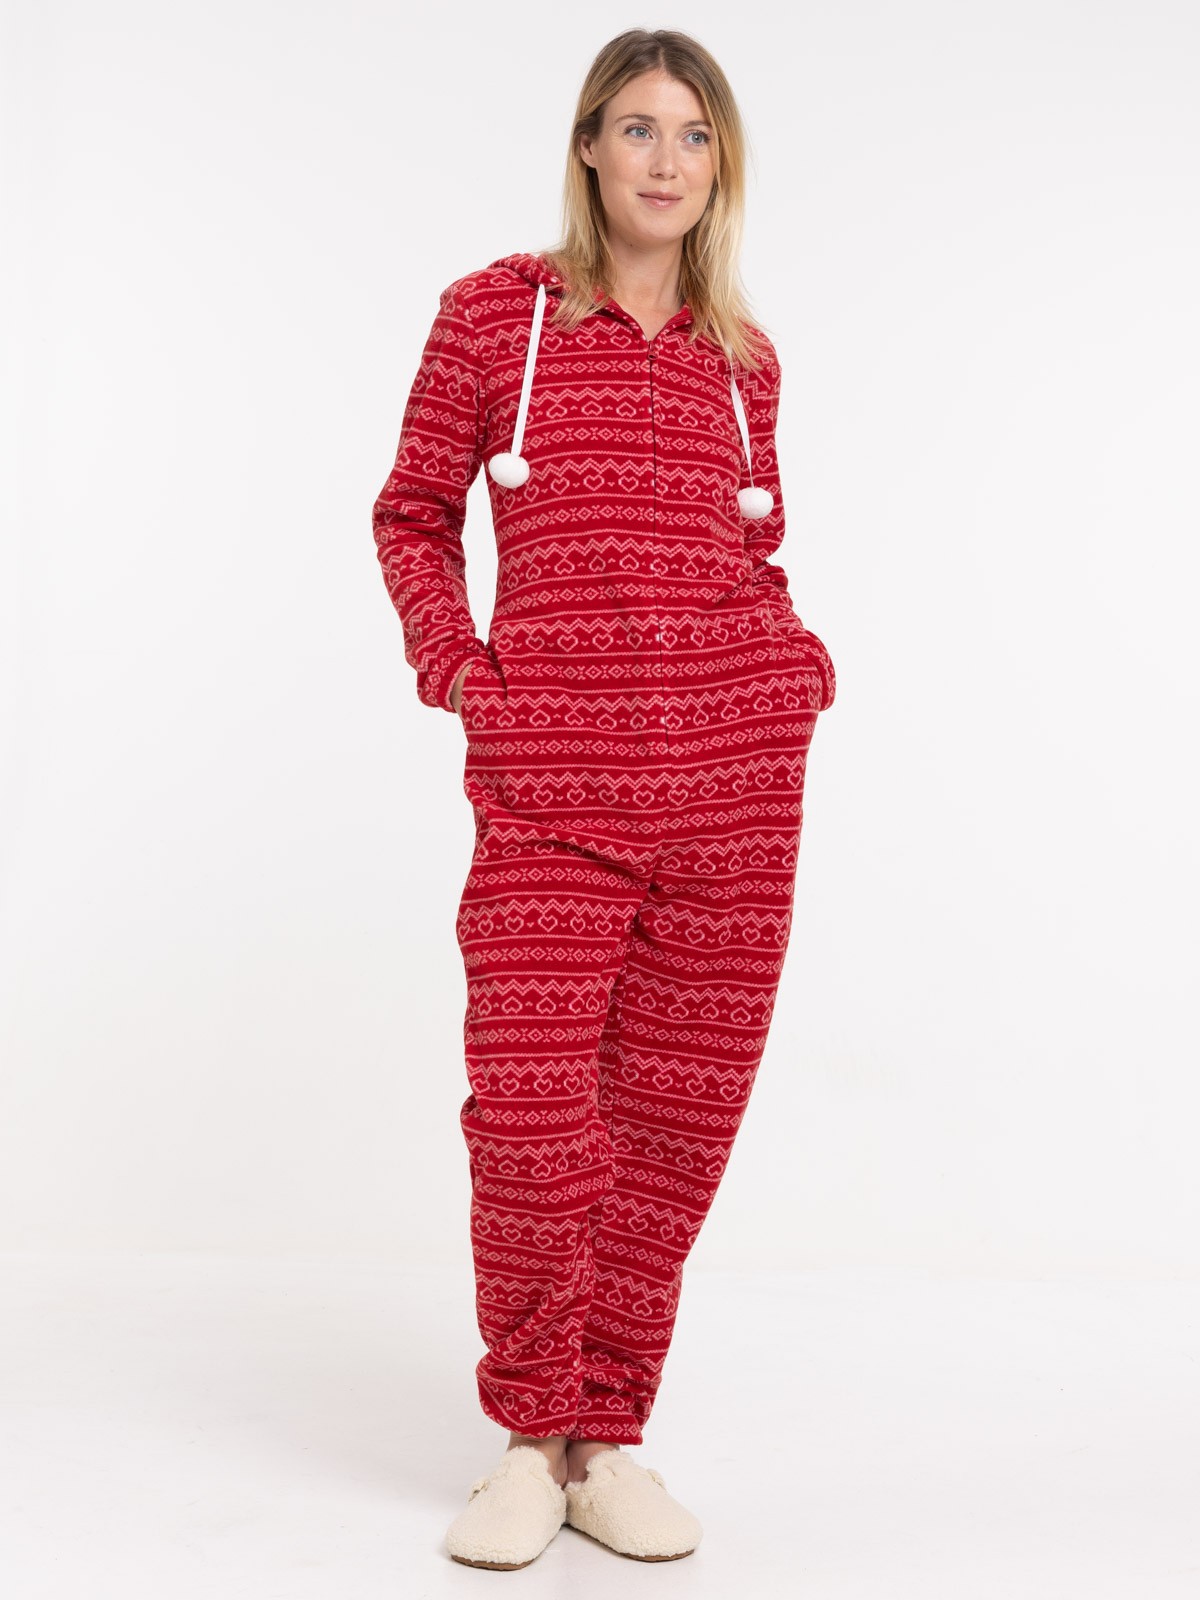 Pyjama lutin de Nöel garçon (3-24M) - DistriCenter